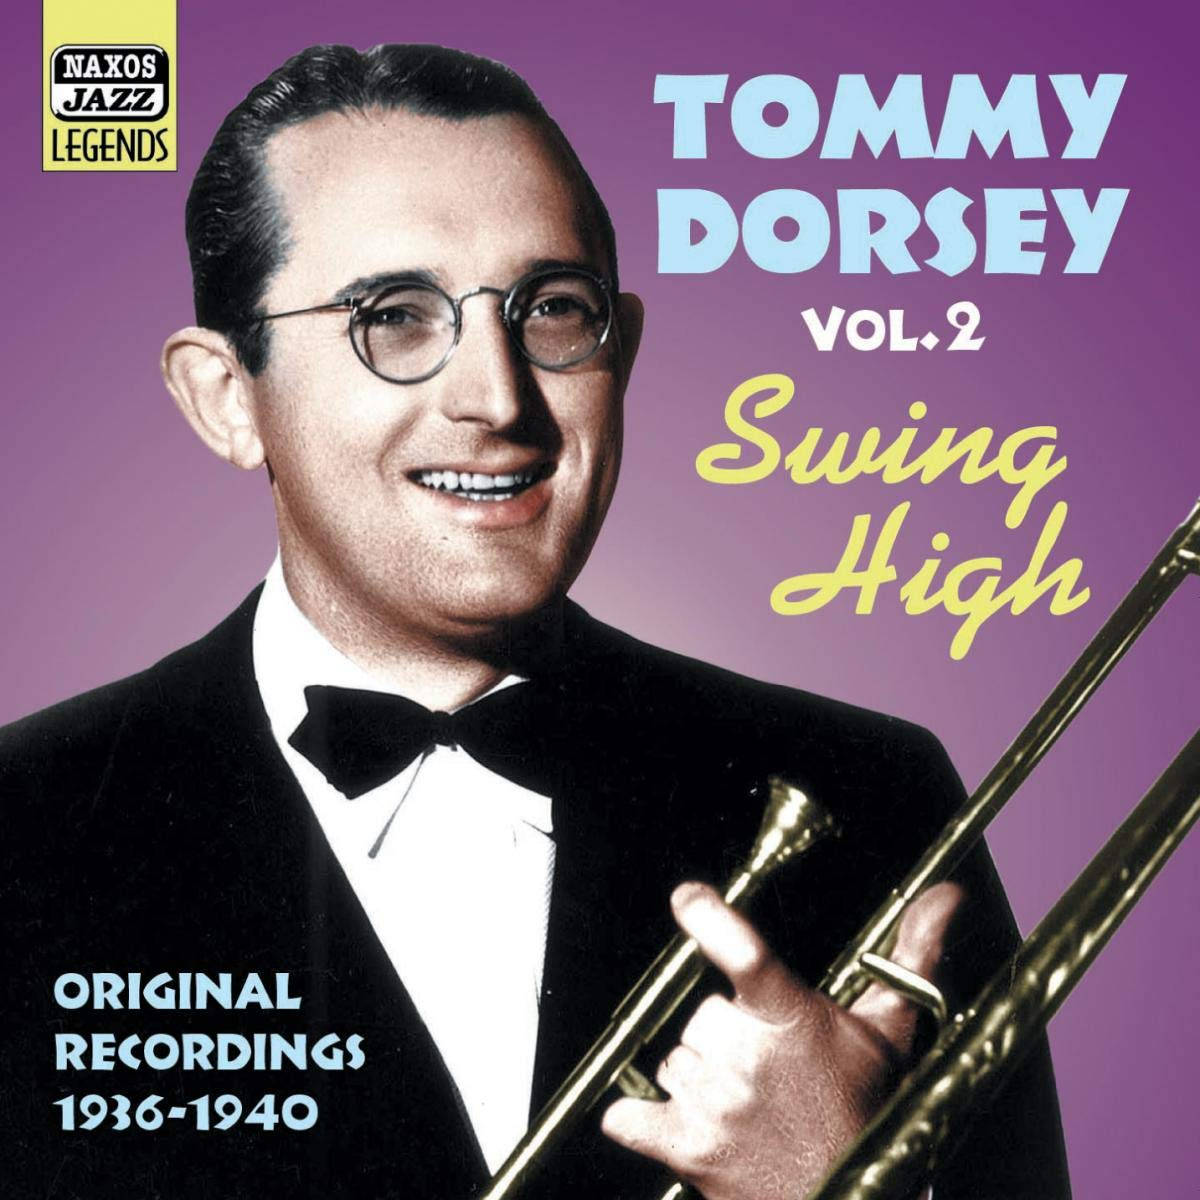 Tommy Dorsey Swing High Volume 2 Album Cover Tapet Wallpaper